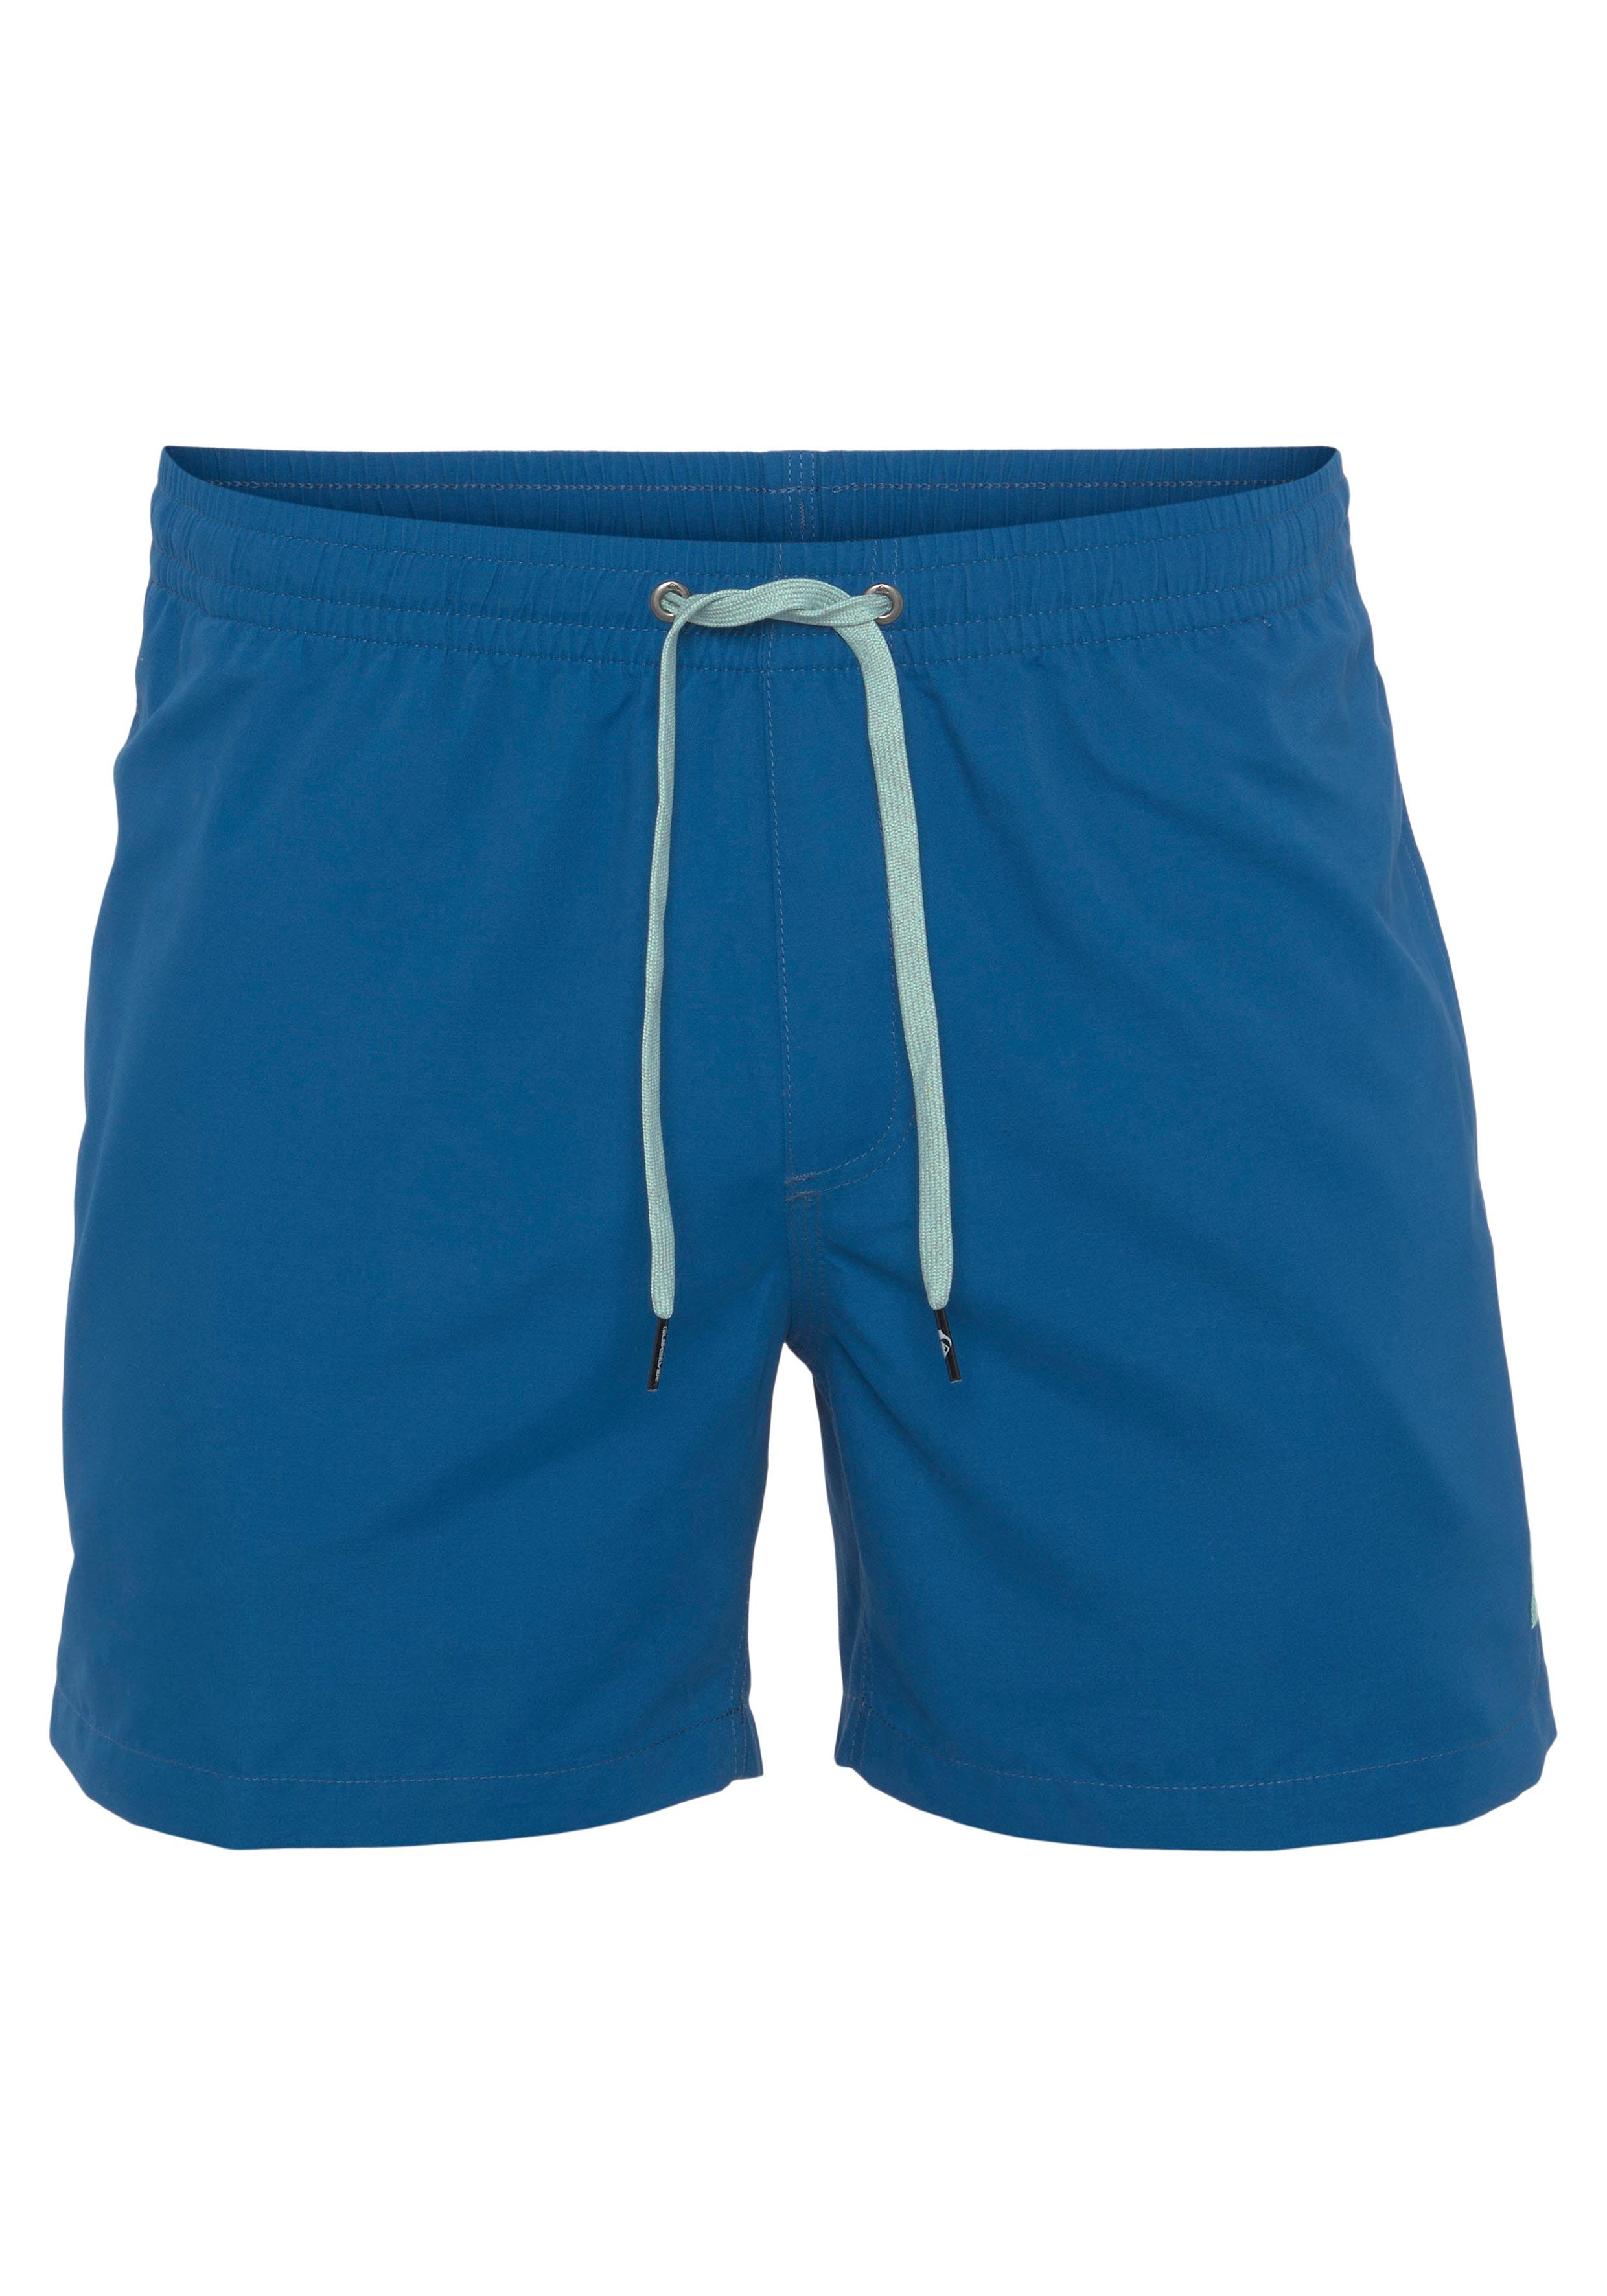 Shorts Swim Herren Quiksilver Beach Shorts Badeshorts blau